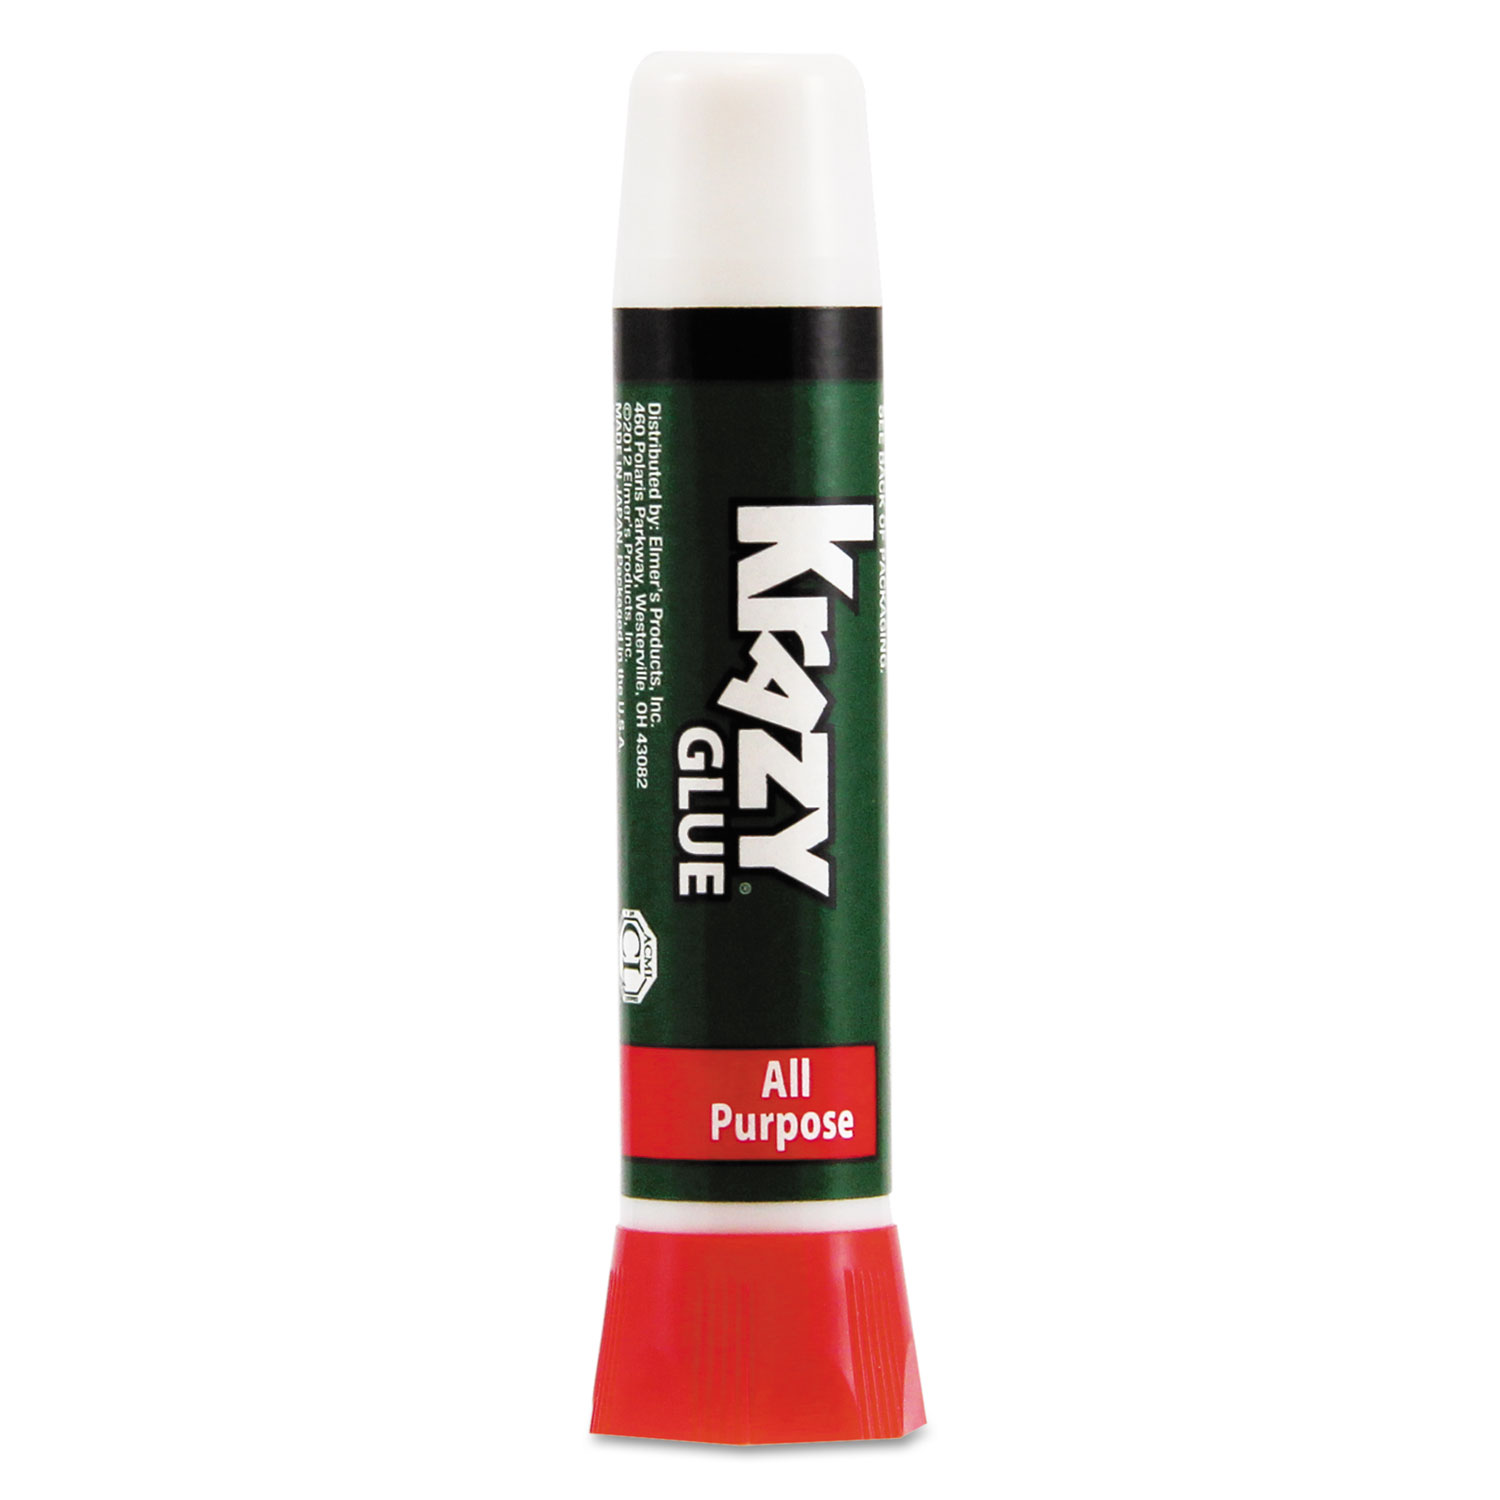 All Purpose Krazy Glue, 0.07 oz, Dries Clear